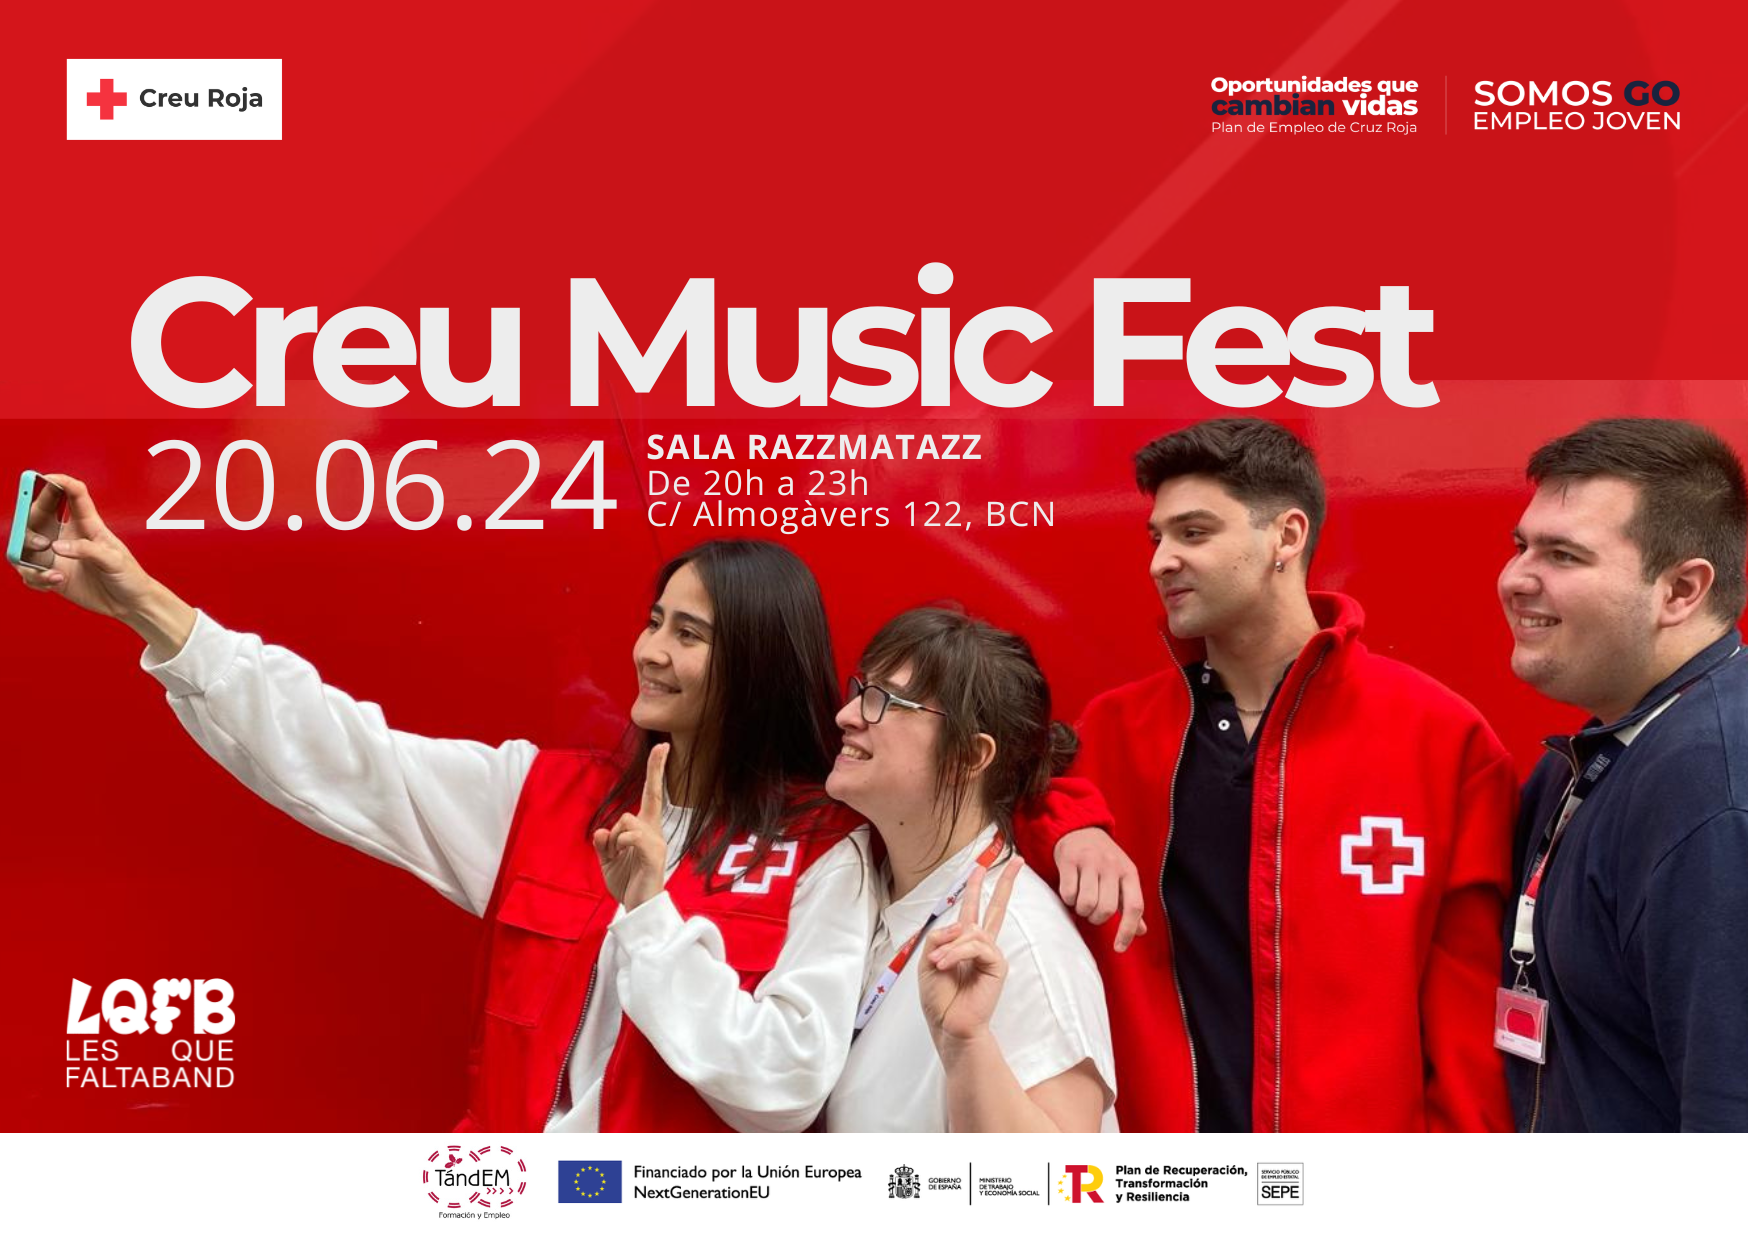 Creu Roja celebra la primera Creu Music Fest para promover la ocupación juvenil